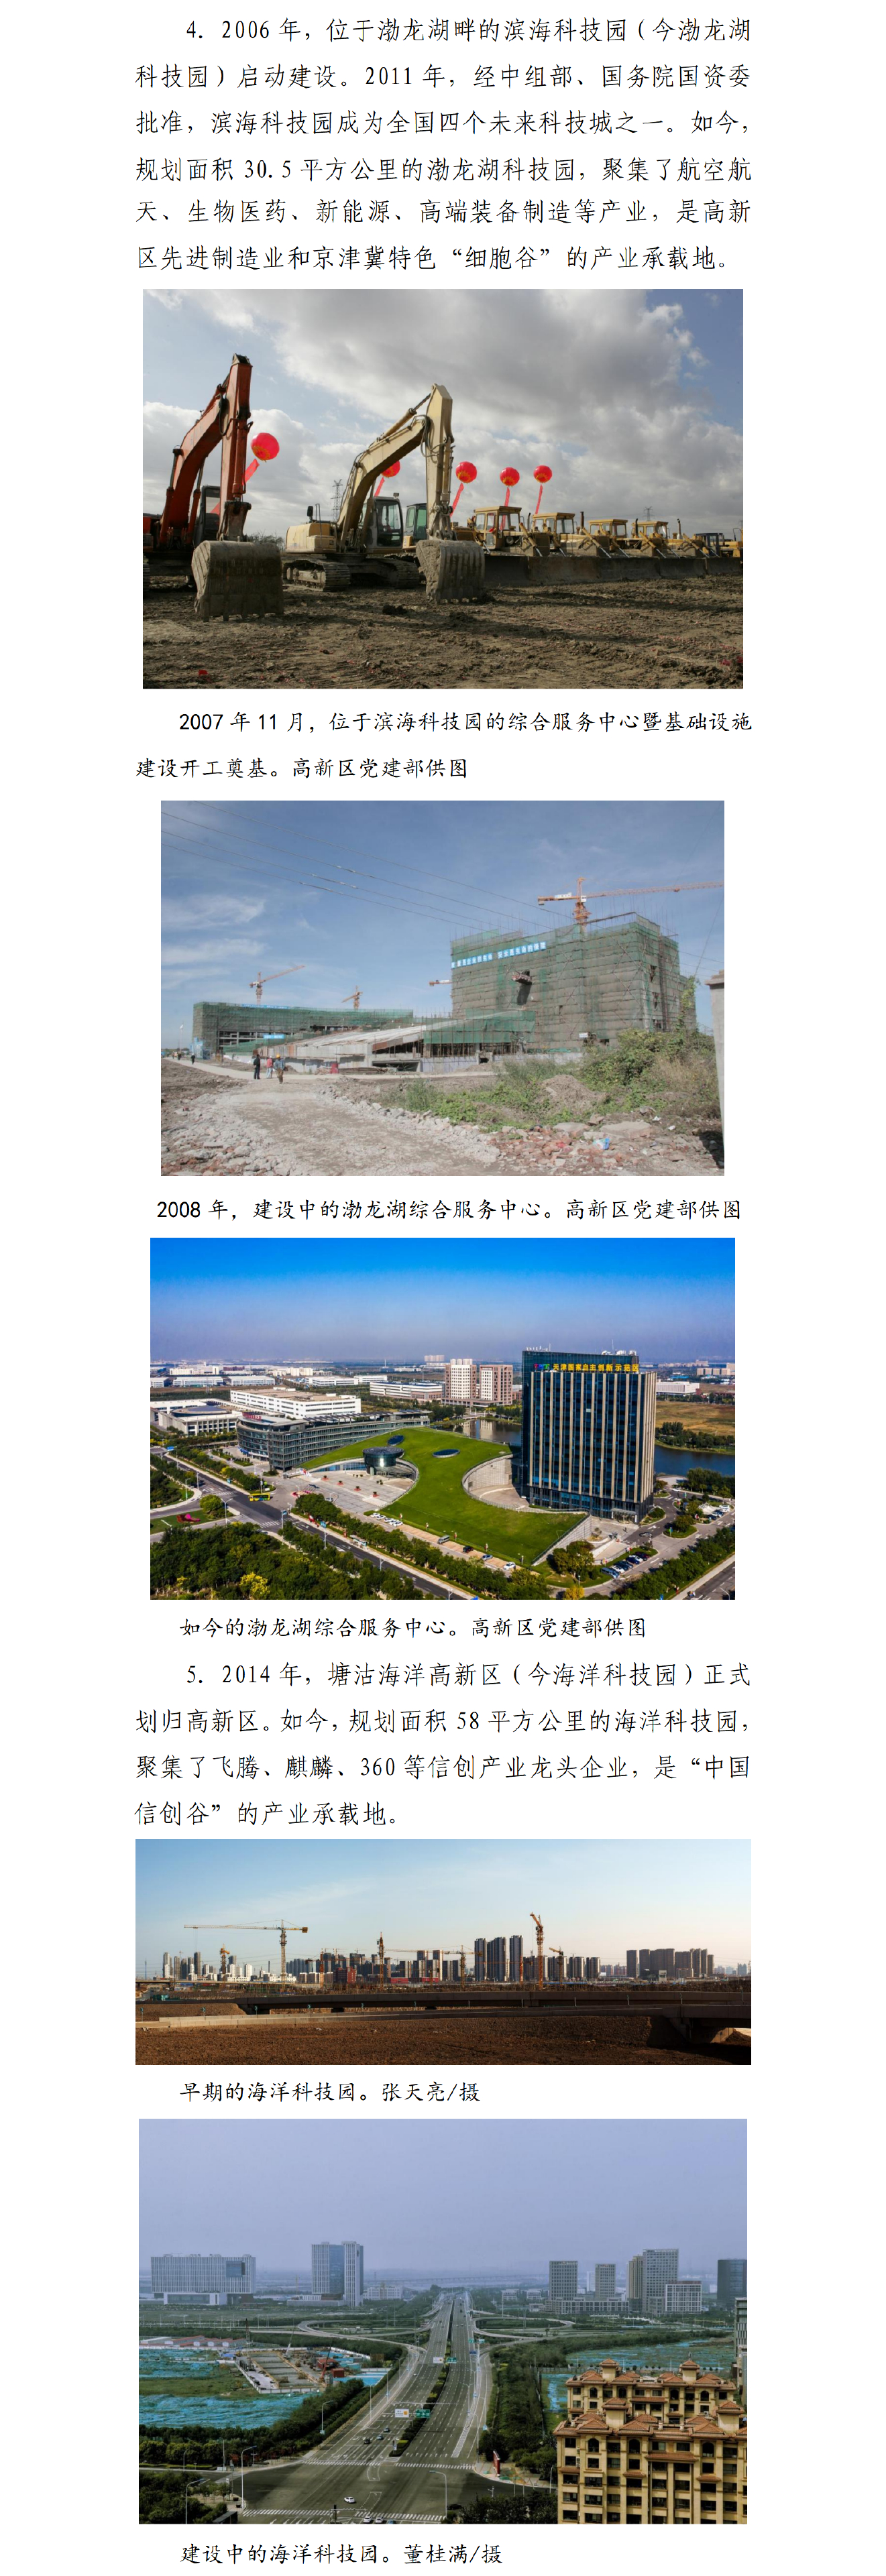 “光阴的故事”系列报道之一 天津高新区：从科贸一条街到“一区多园”